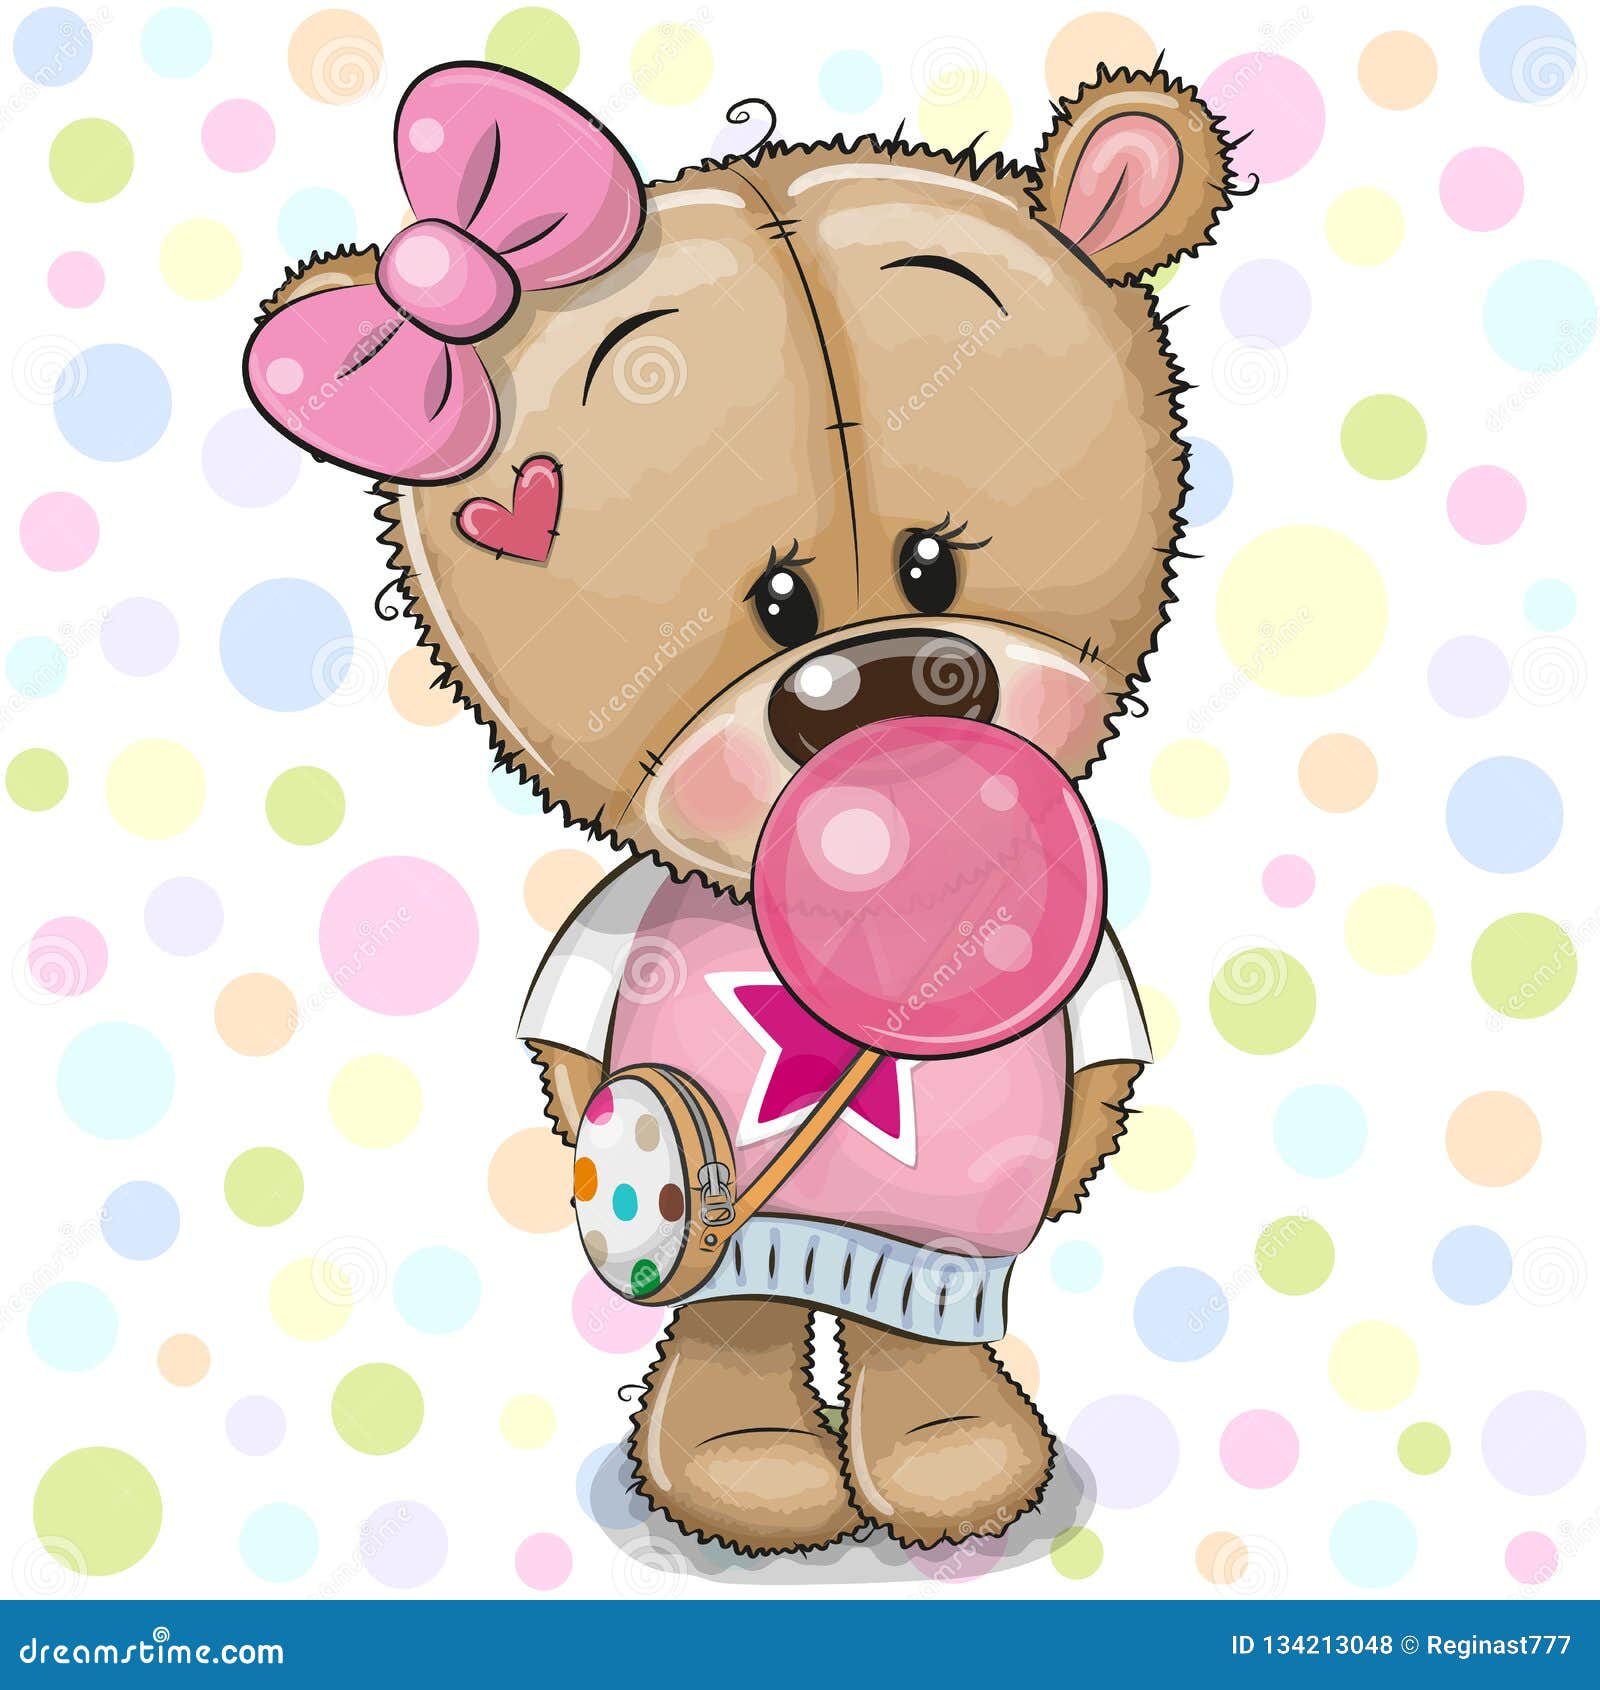 Мишка девочка картинка. Медвежонок Тедди девочка. Медвежонок с розовым бантиком. Девочка с мишкой. Девочка с медвежонком.